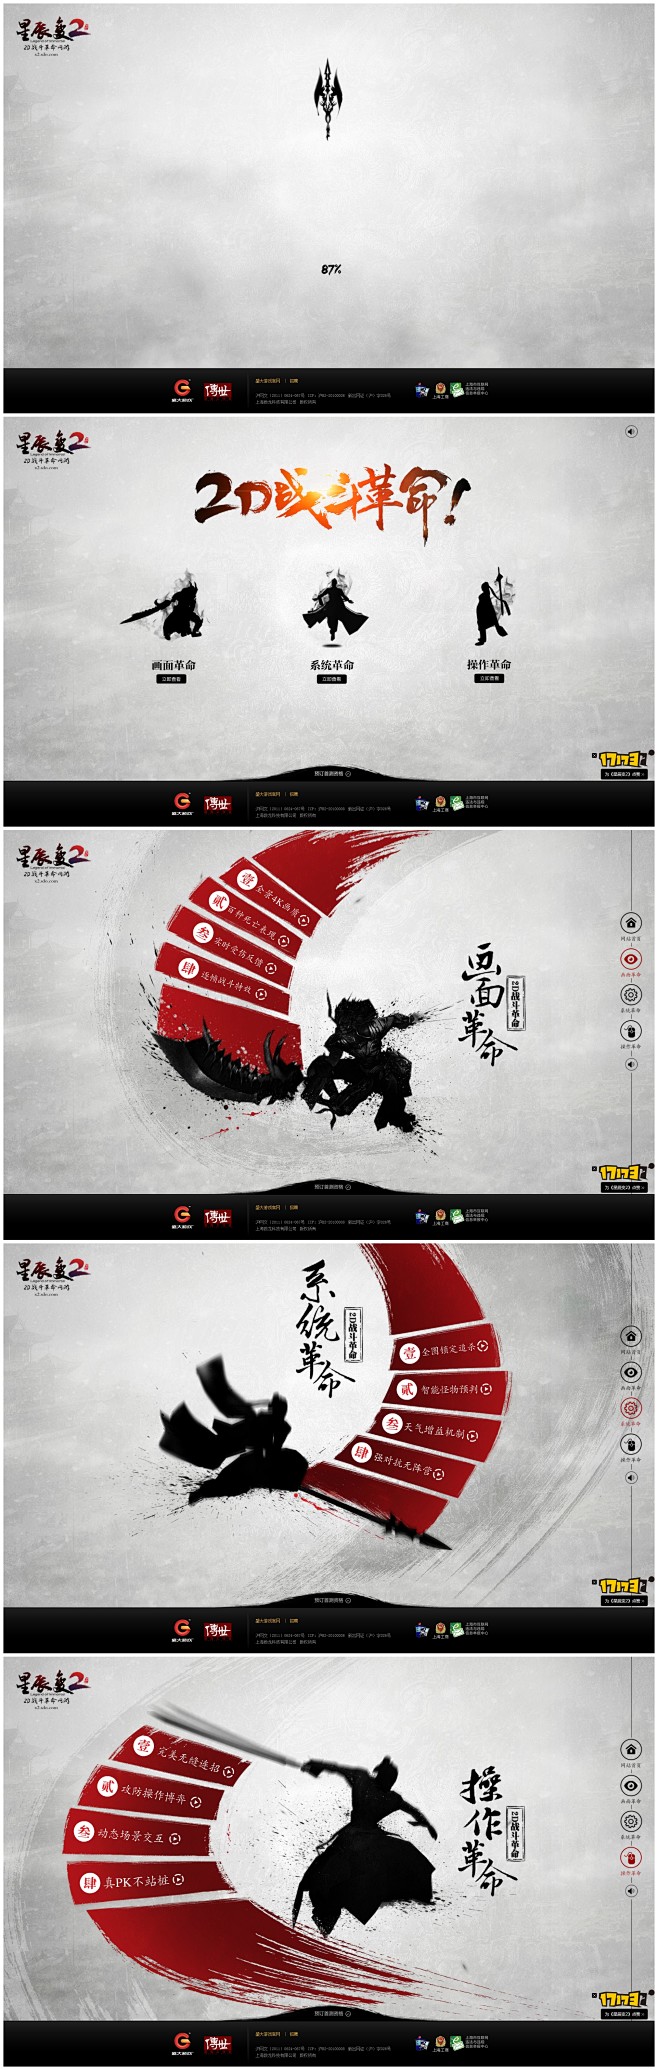 《星辰变2》官方网站——2D战斗革命网游